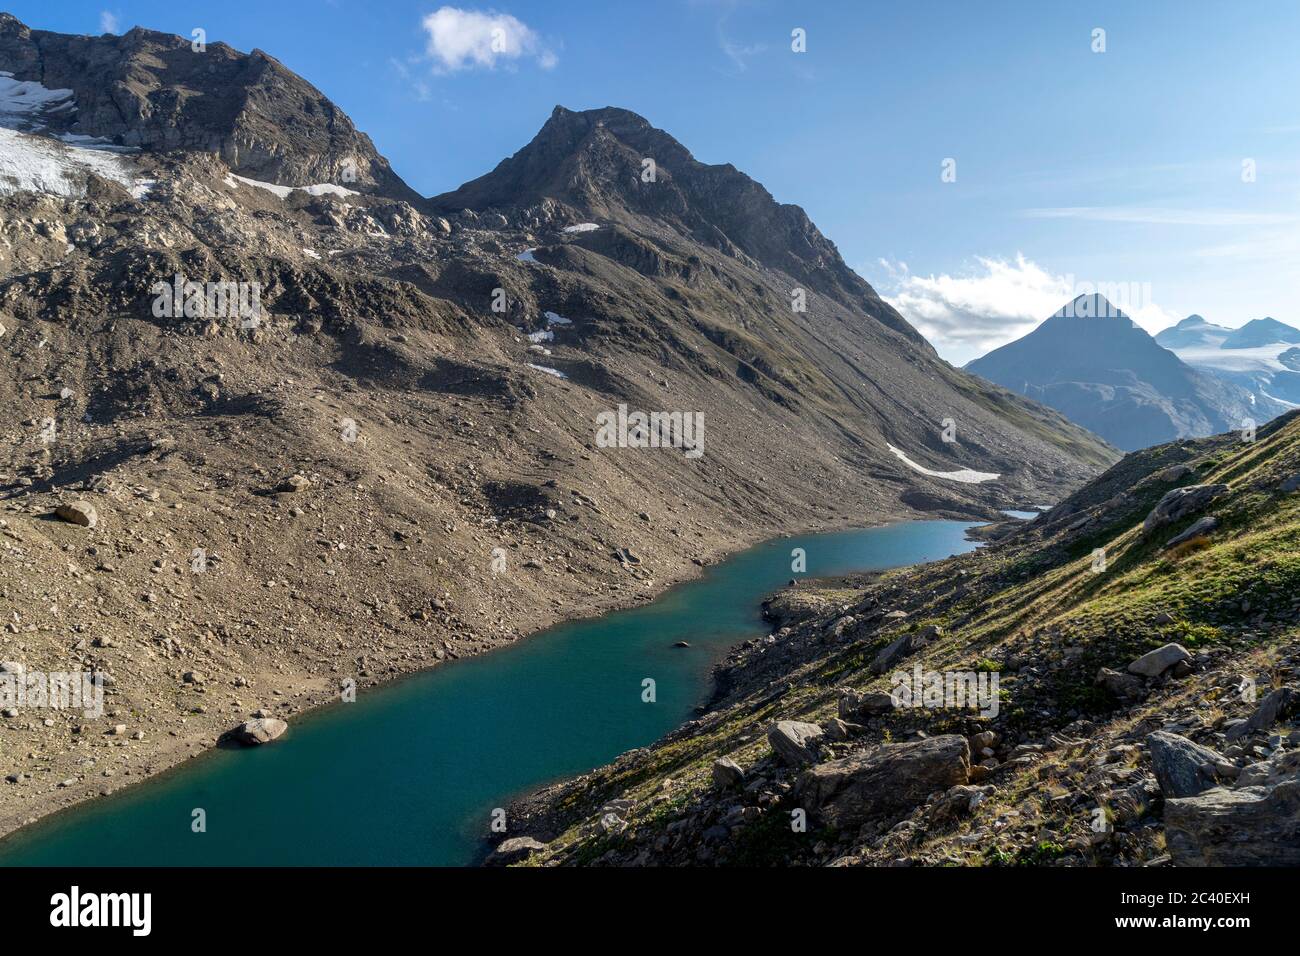 Namenloser See im Val Corno, Kanton Tessin, wenig unterhalb des Cornopass oder Passo del Corno (rechts hinter dem See). Über dem See das Klein Griesho Stock Photo